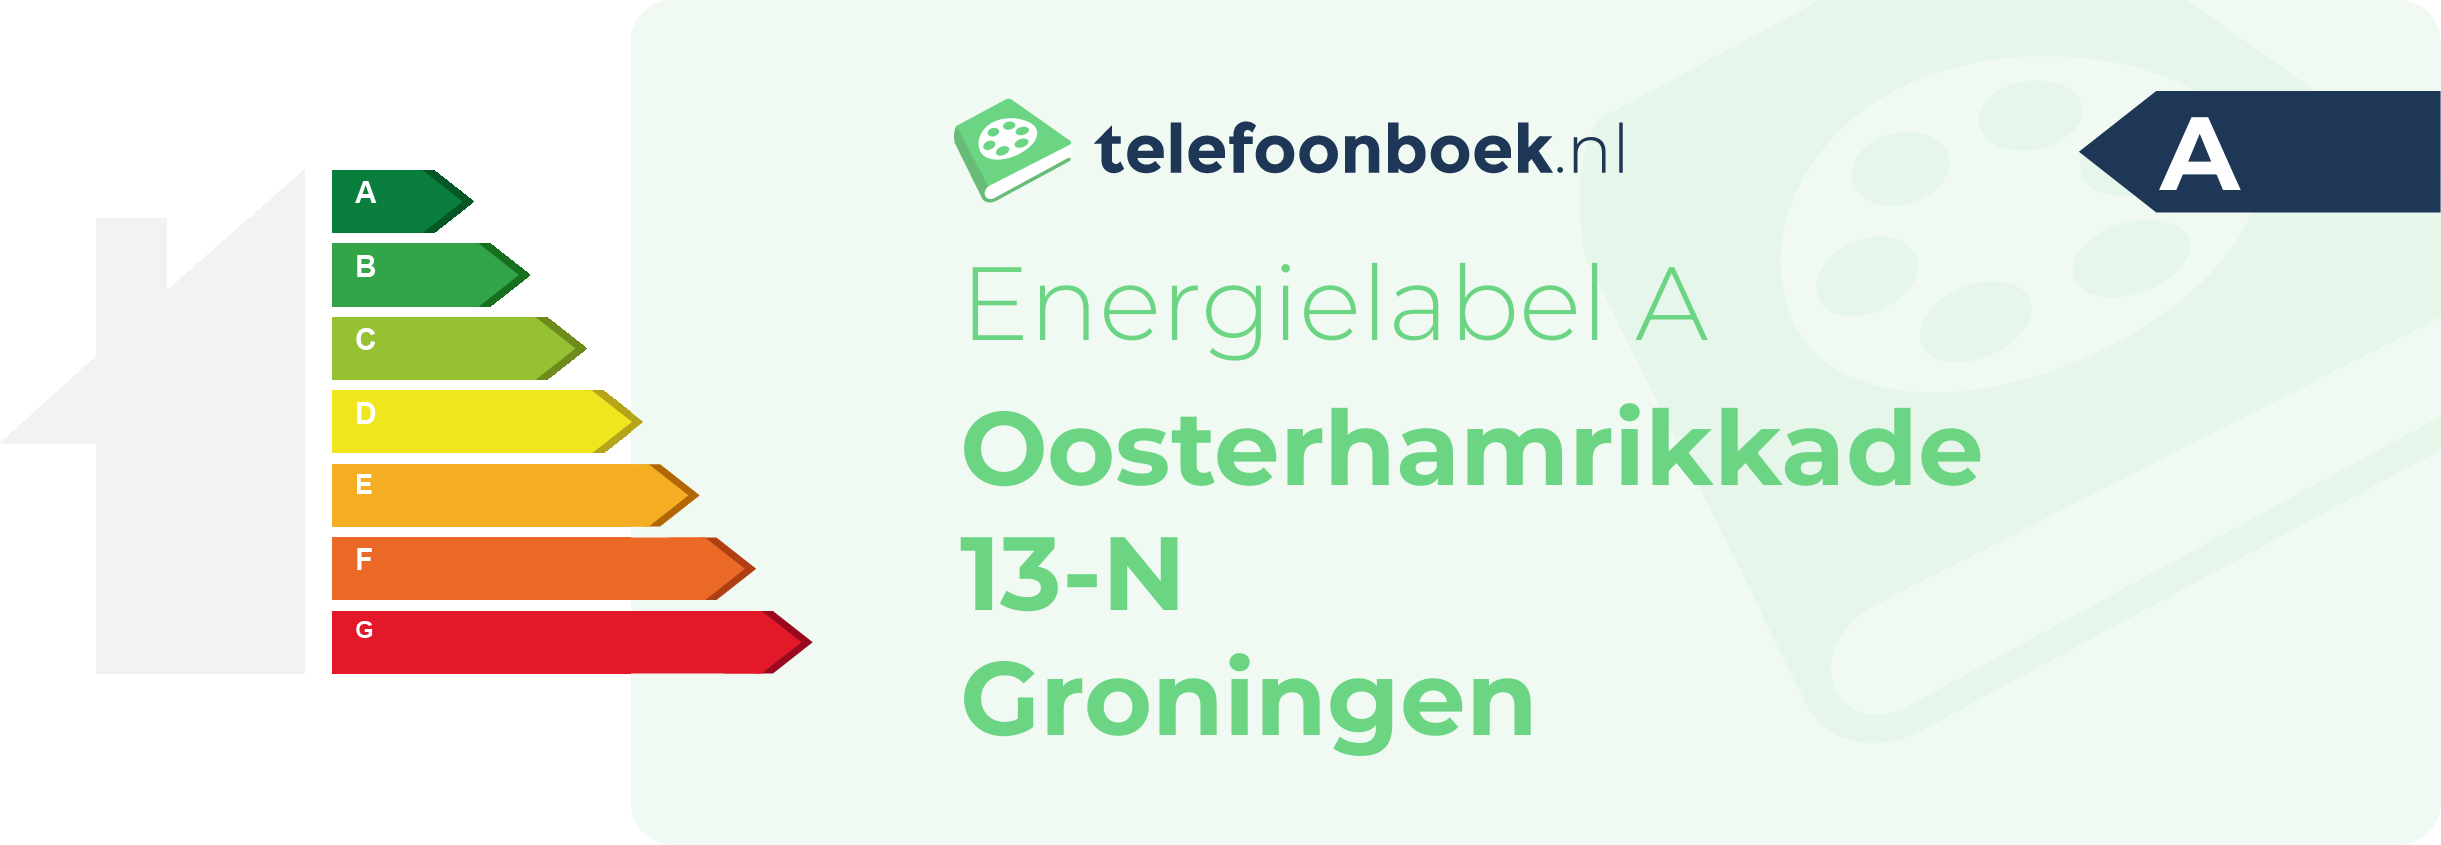 Energielabel Oosterhamrikkade 13-N Groningen